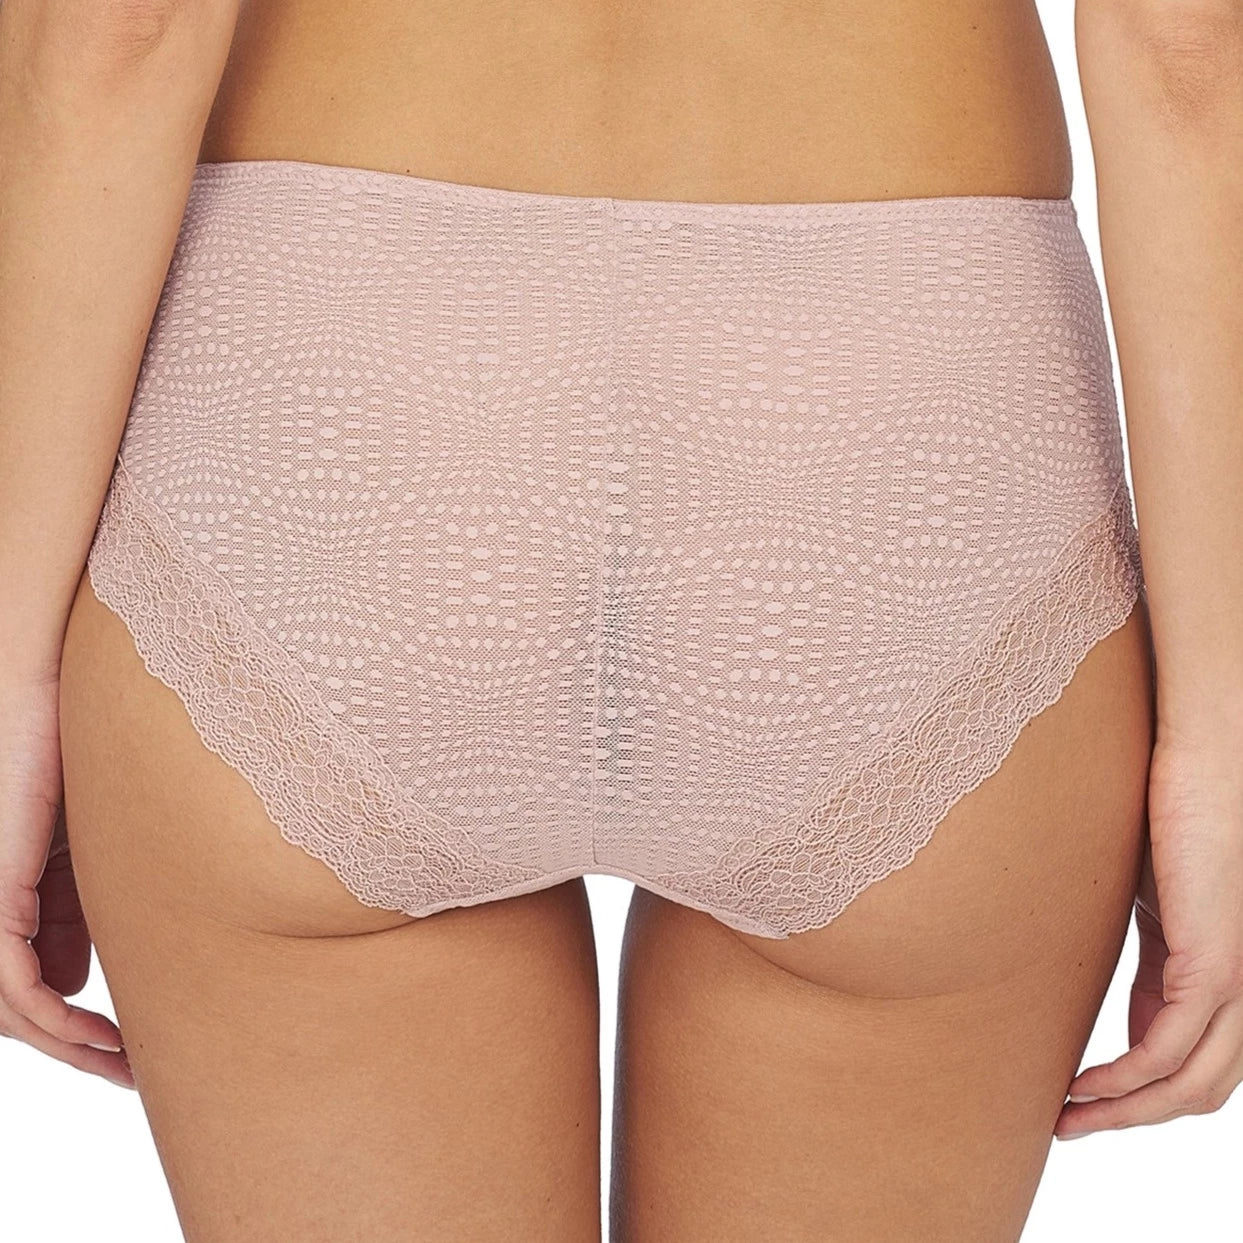 Beyond Full Brief - 778286 - Rose Beige Bras & Lingerie - Underwear - Full Brief NATORI   